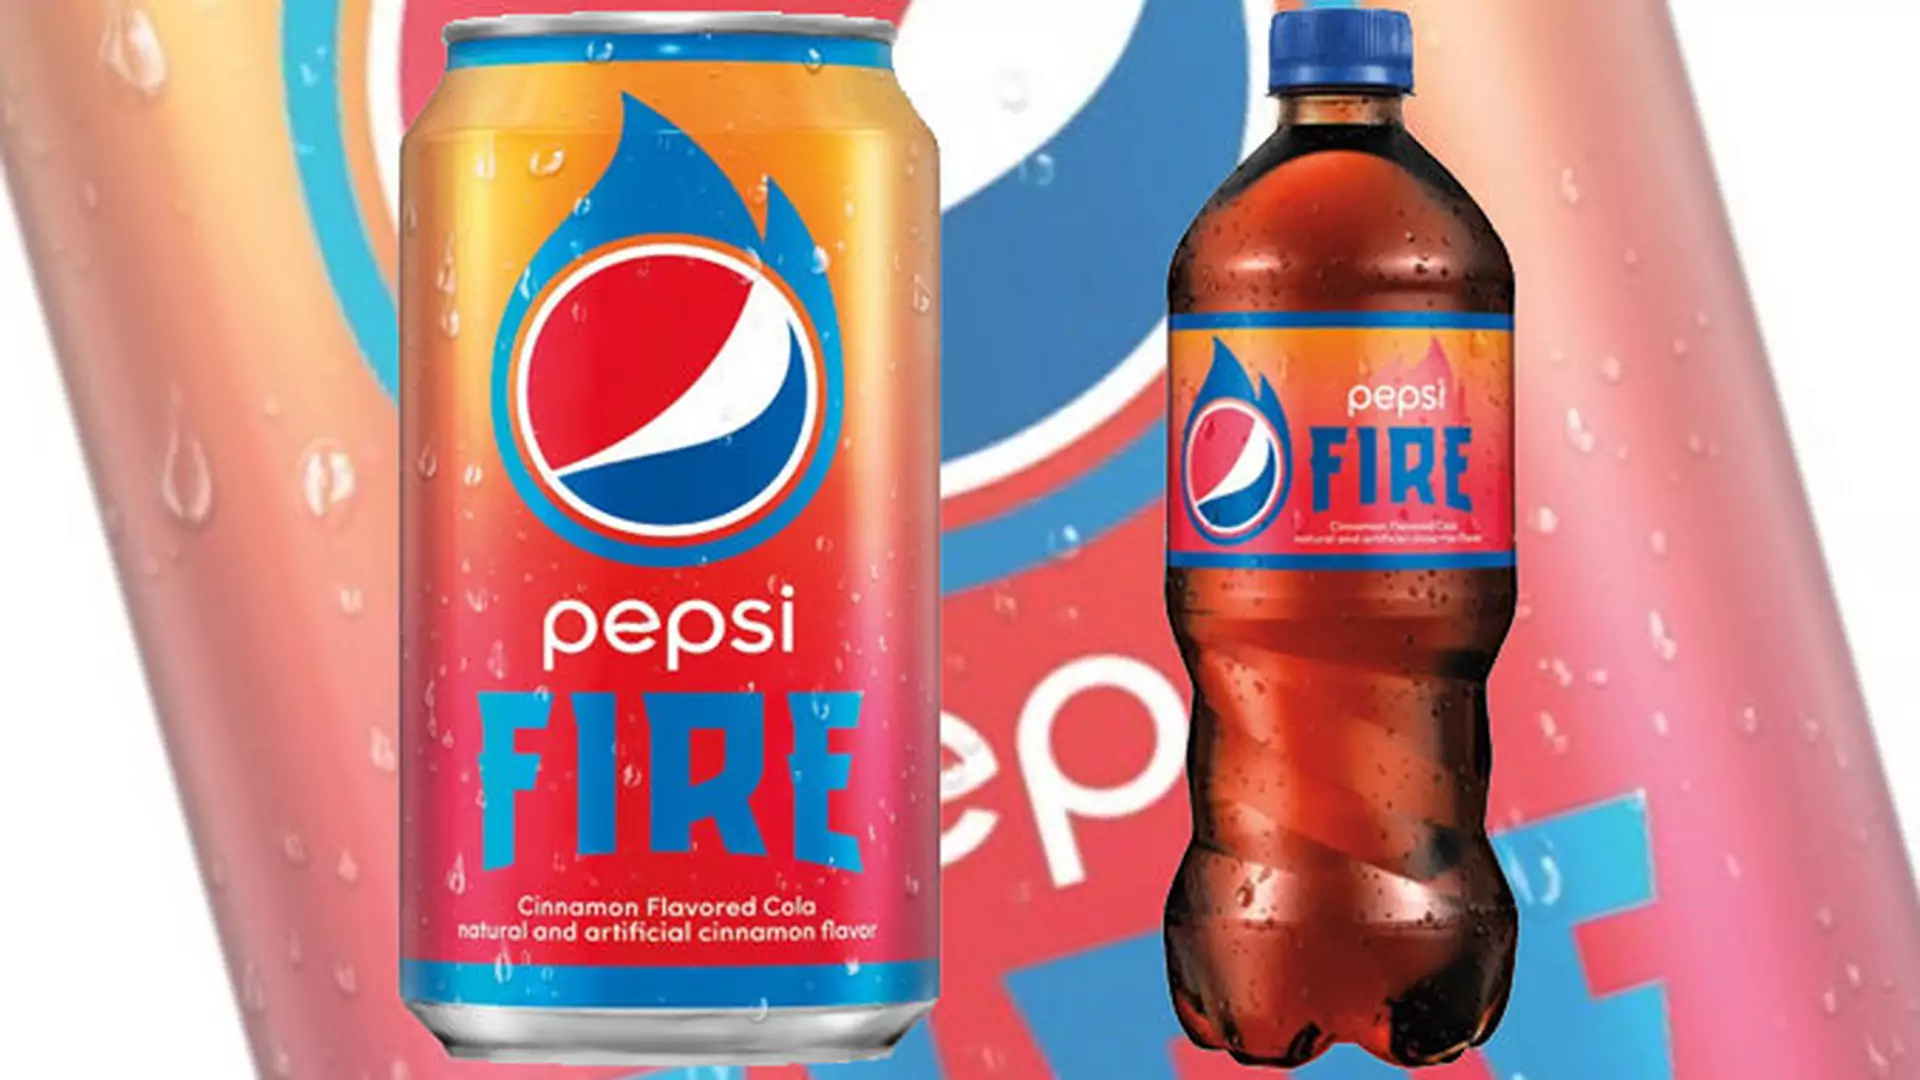 Nowy smak Pepsi podzielił fanów napoju. Nie wszyscy są zadowoleni